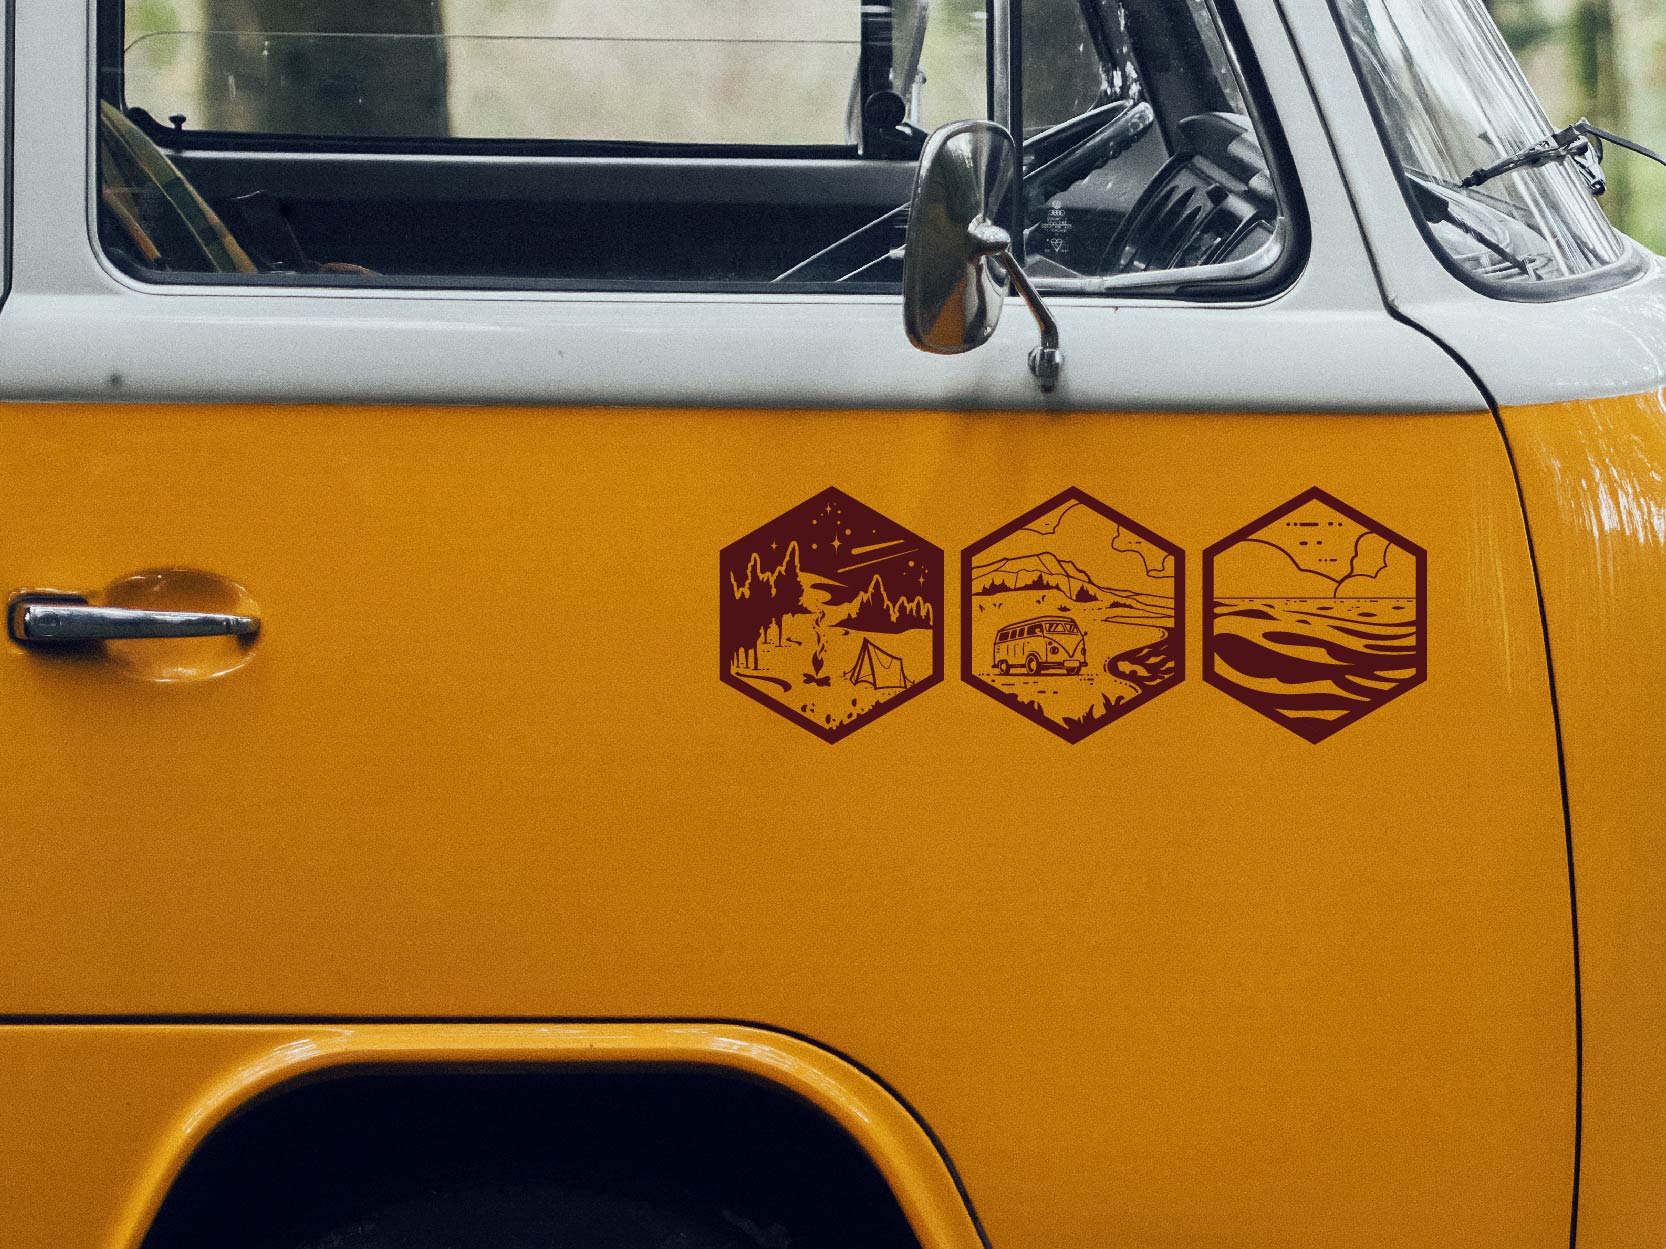 Etiqueta engomada de Vanlife en furgoneta naranja